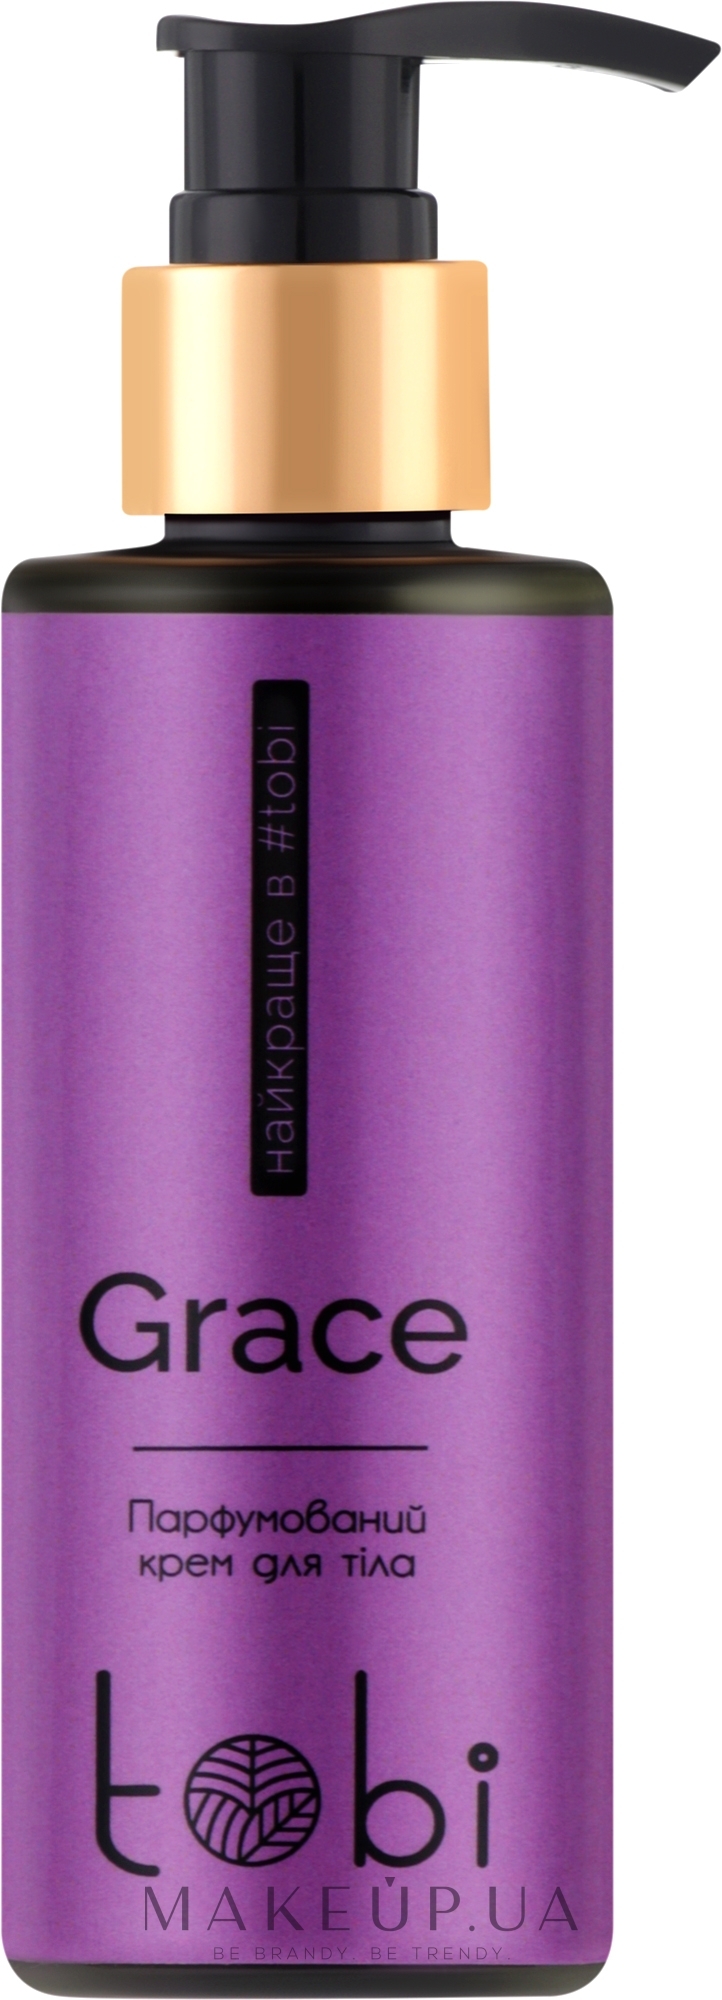 Парфюмированный крем для тела - Tobi Grace Perfumed Body Cream — фото 200ml